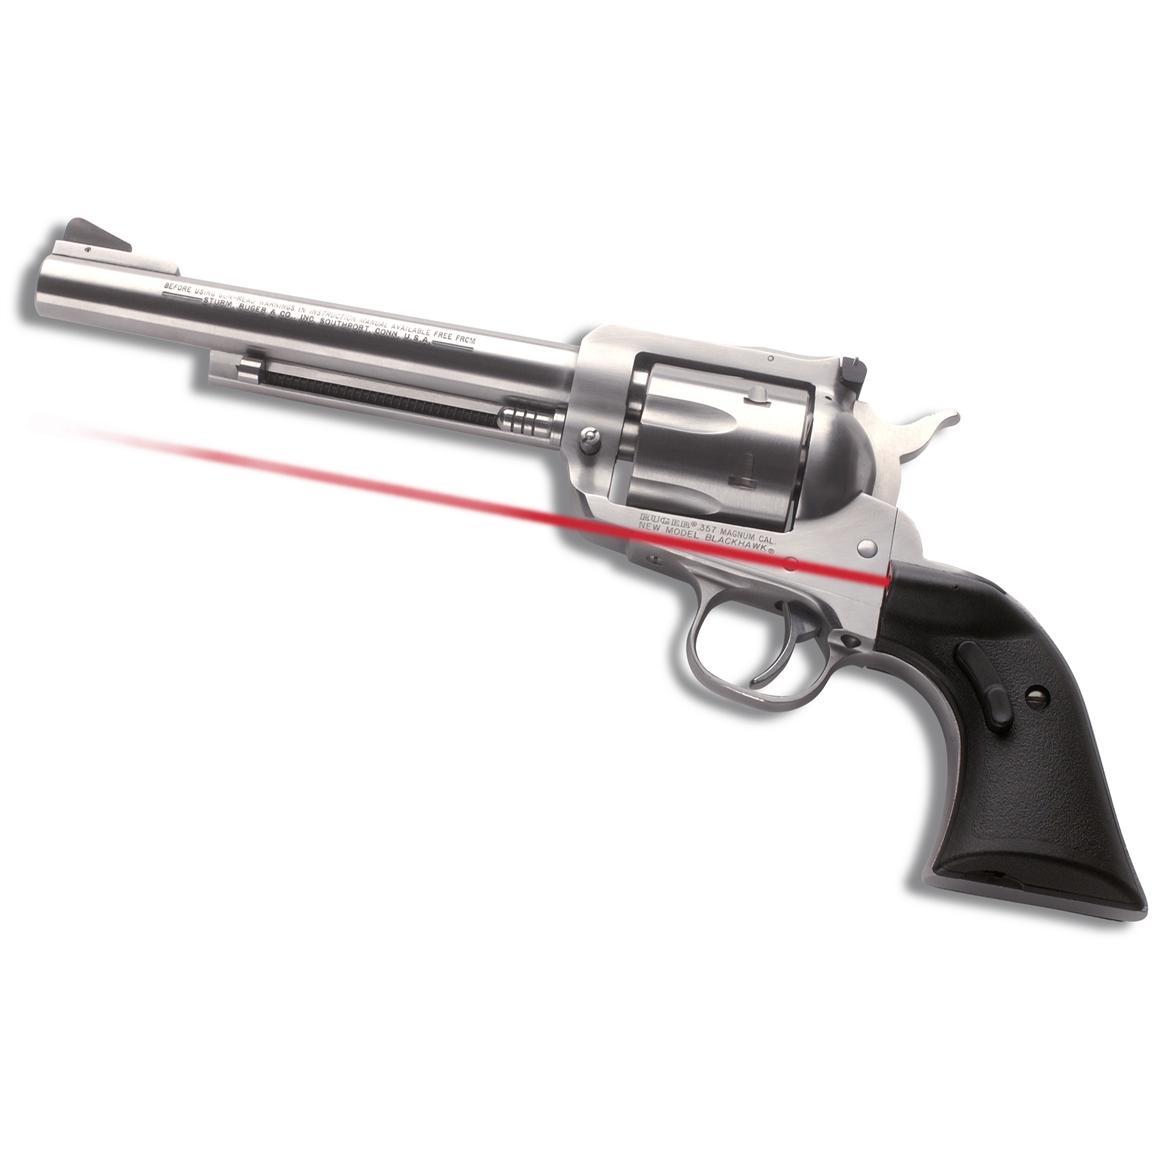 Crimson Trace Revolver Lasergrips For Ruger Blackhawk - new model ruger blackhawk 357 grips